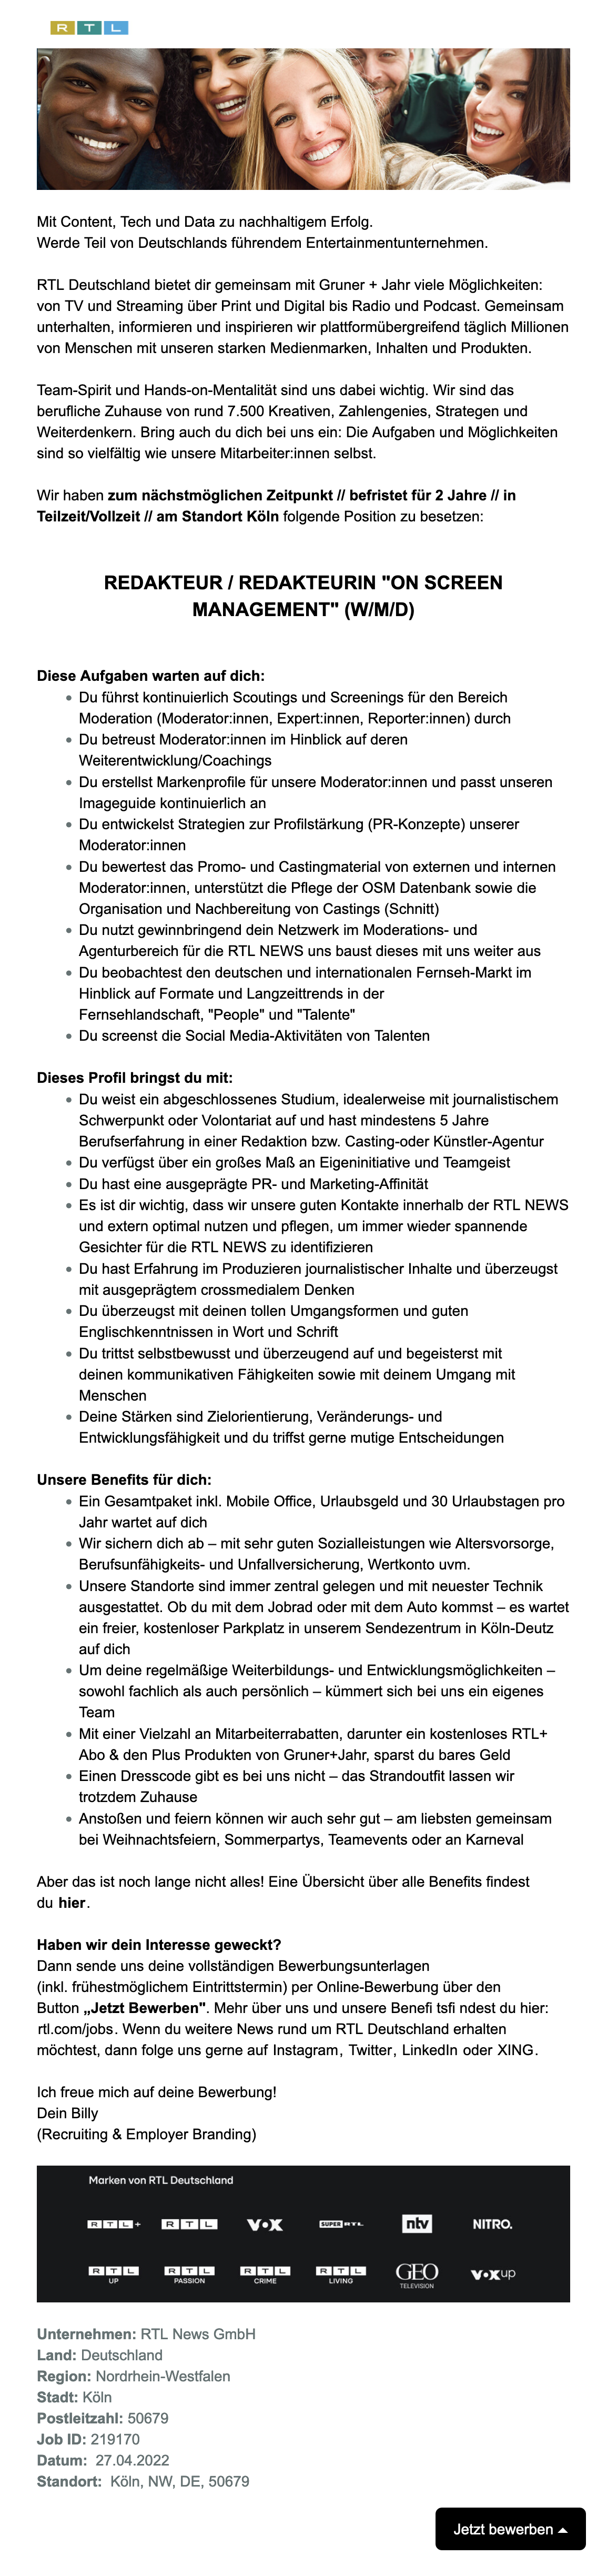 Redaktioneller Mitarbeiter - OnScreen Management (w/m/d) (RTL NEWS)